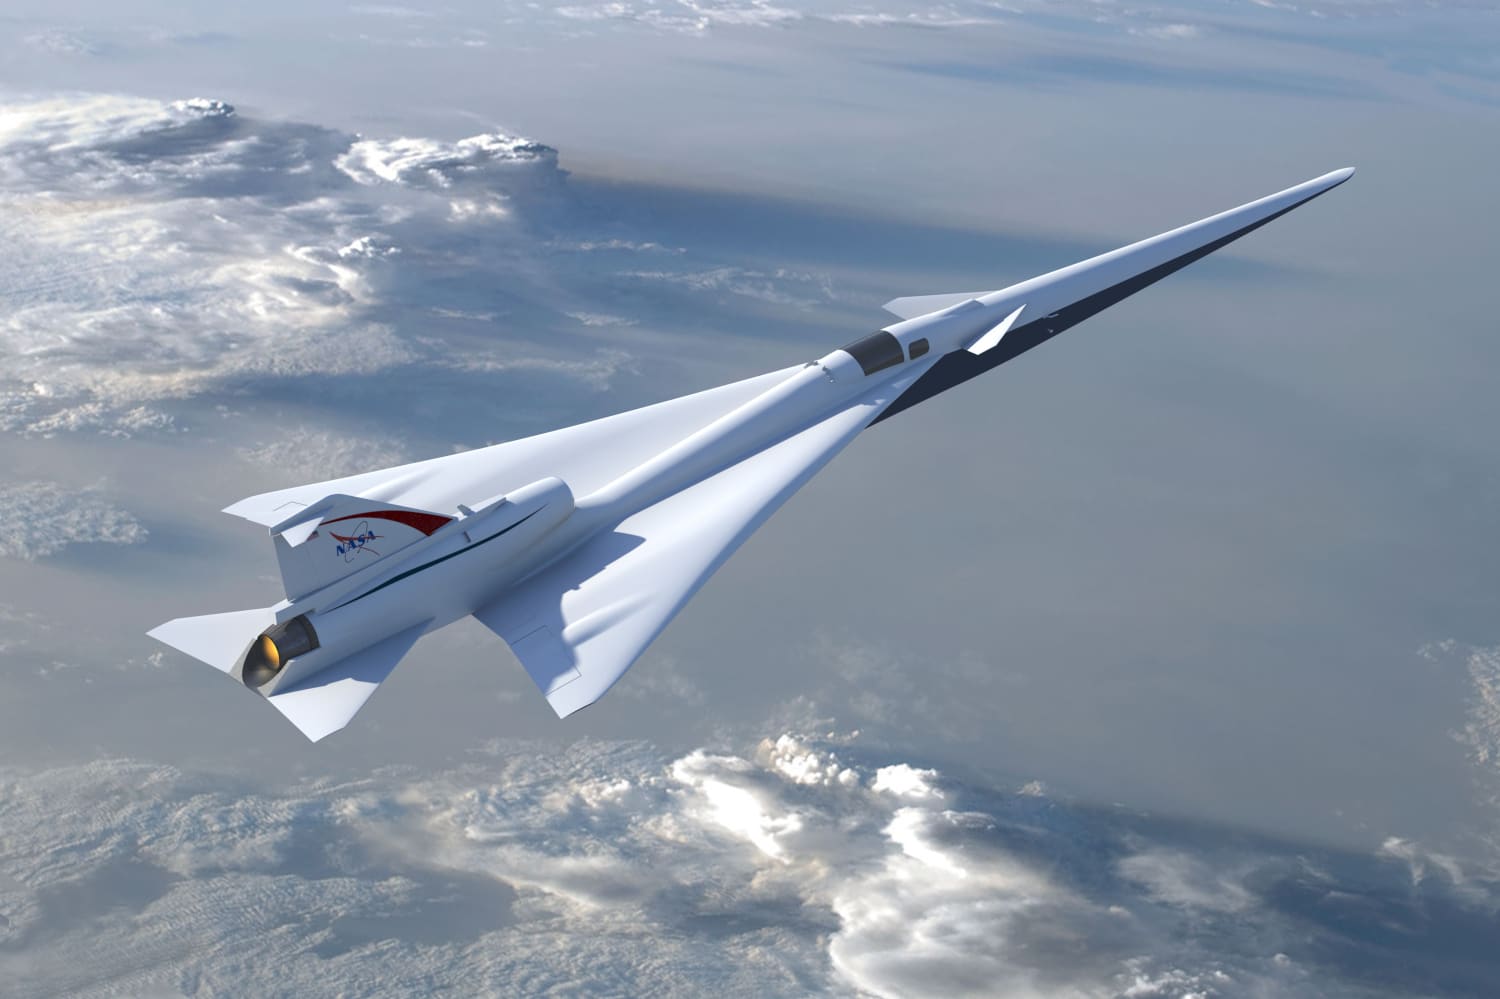 NASA’s X-59 supersonische vliegtuig, dat in staat is om de geluidsbarrière “in stilte” te doorbreken, zal binnenkort vliegen